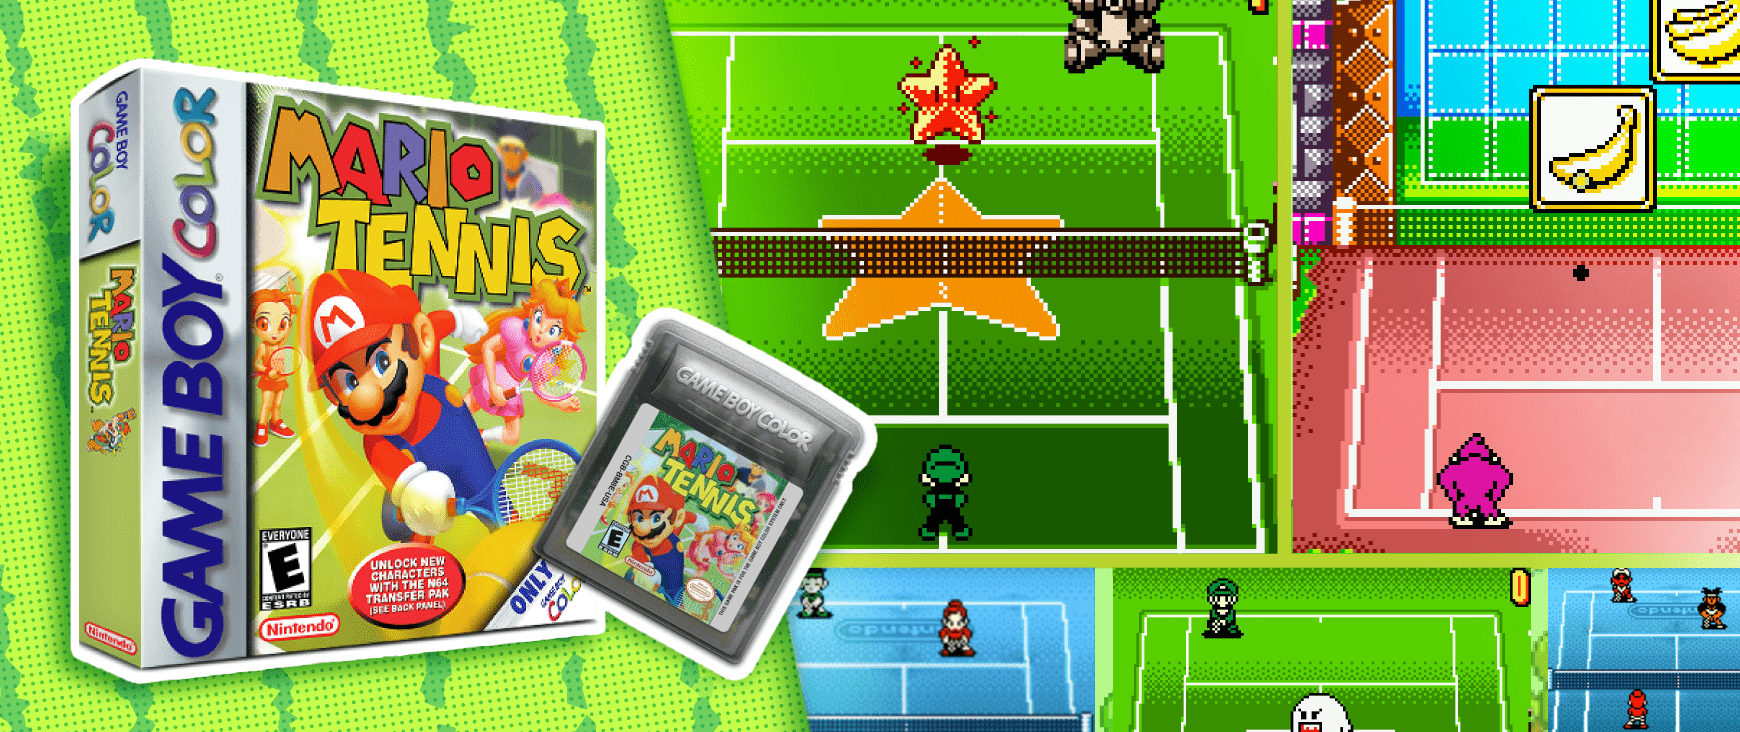 Mario Tennis on Game Boy Color